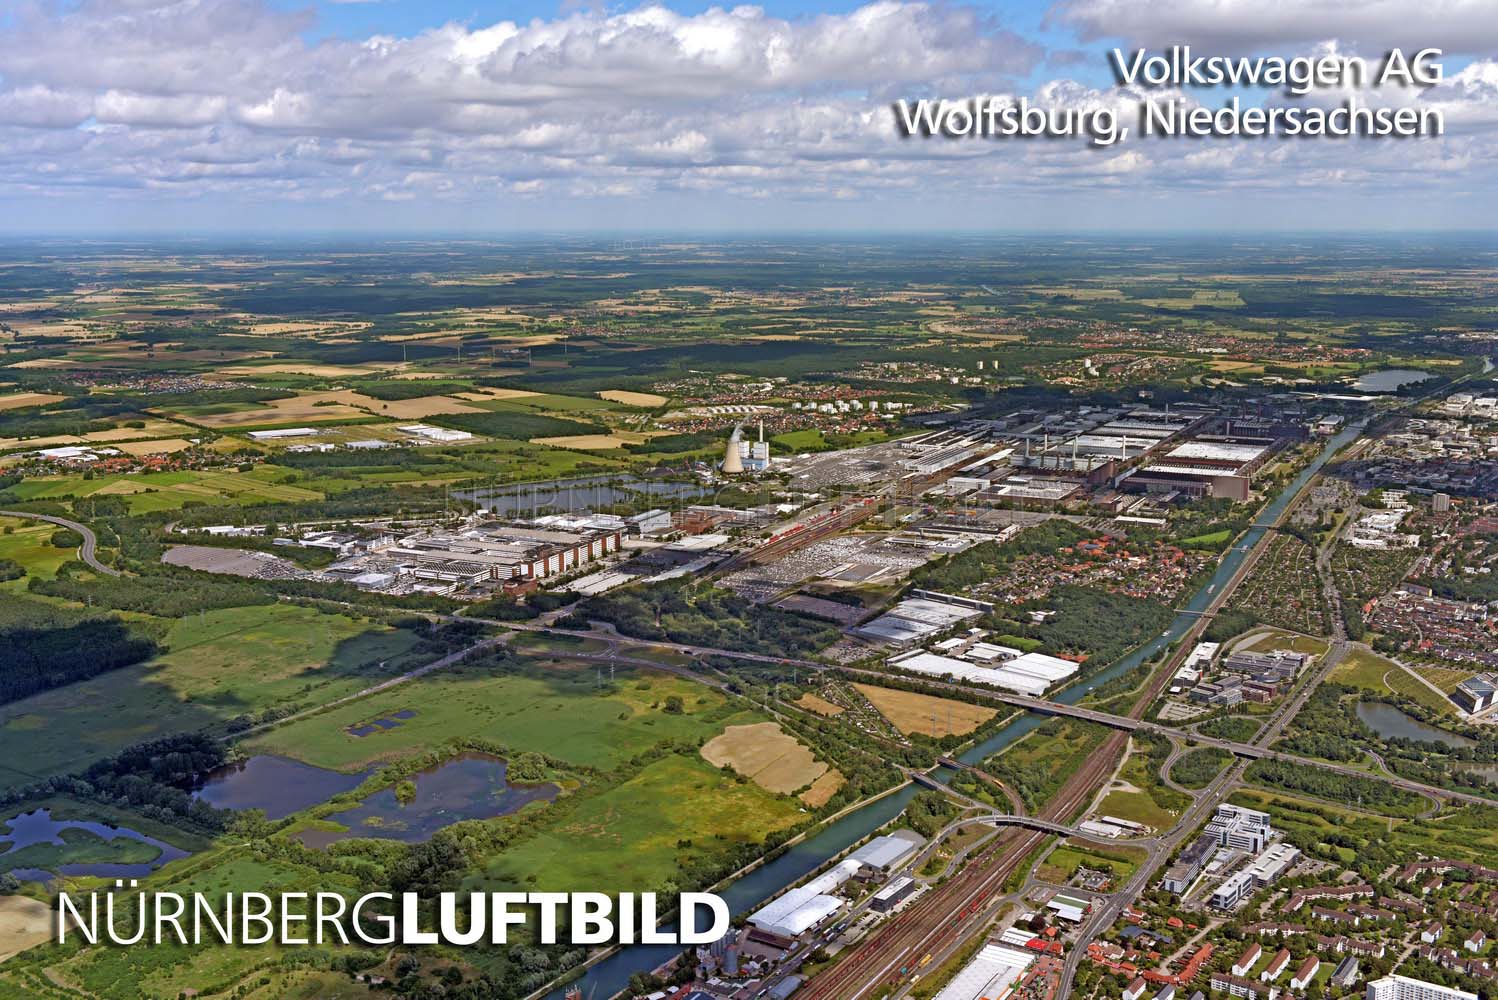 Volkswagen AG, Wolfsburg, Luftbild